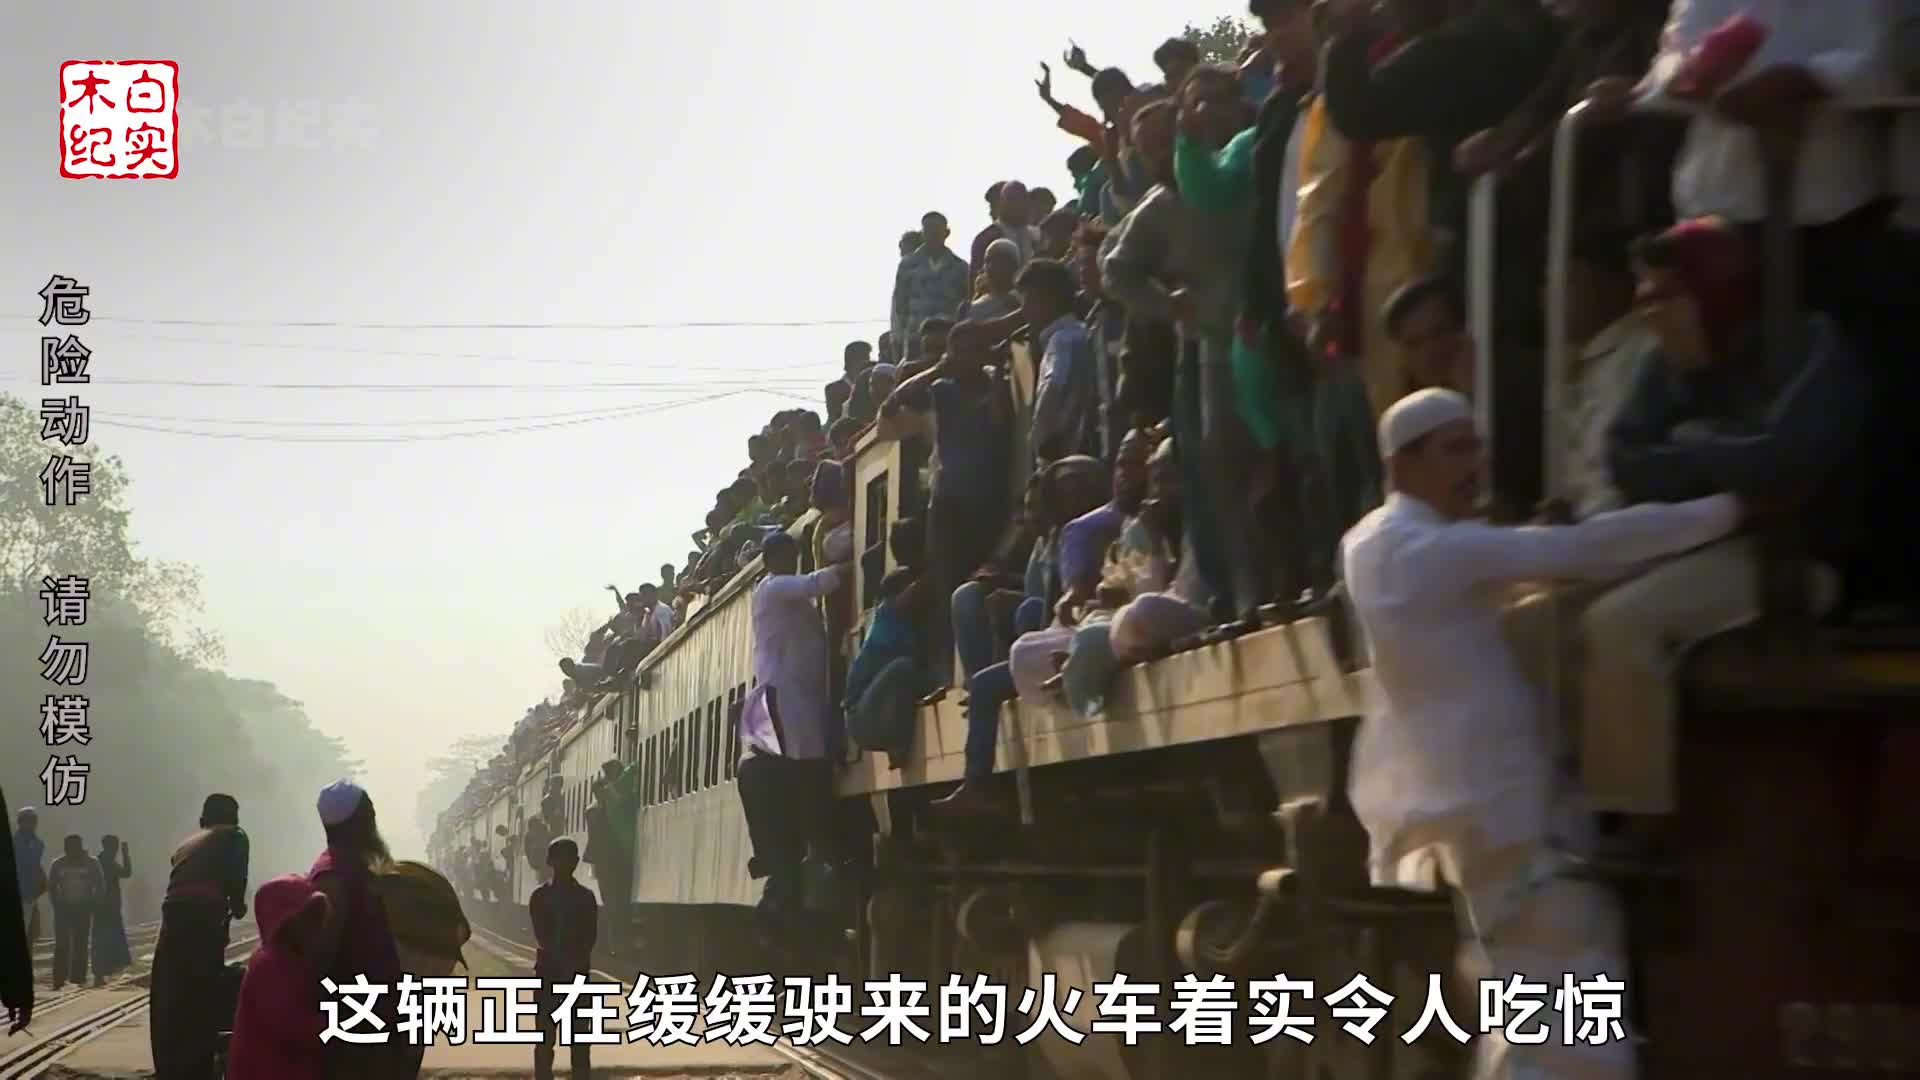 火车可以有多挤？车顶全占满，车厢人挤人，上车得爬梯子，纪录片